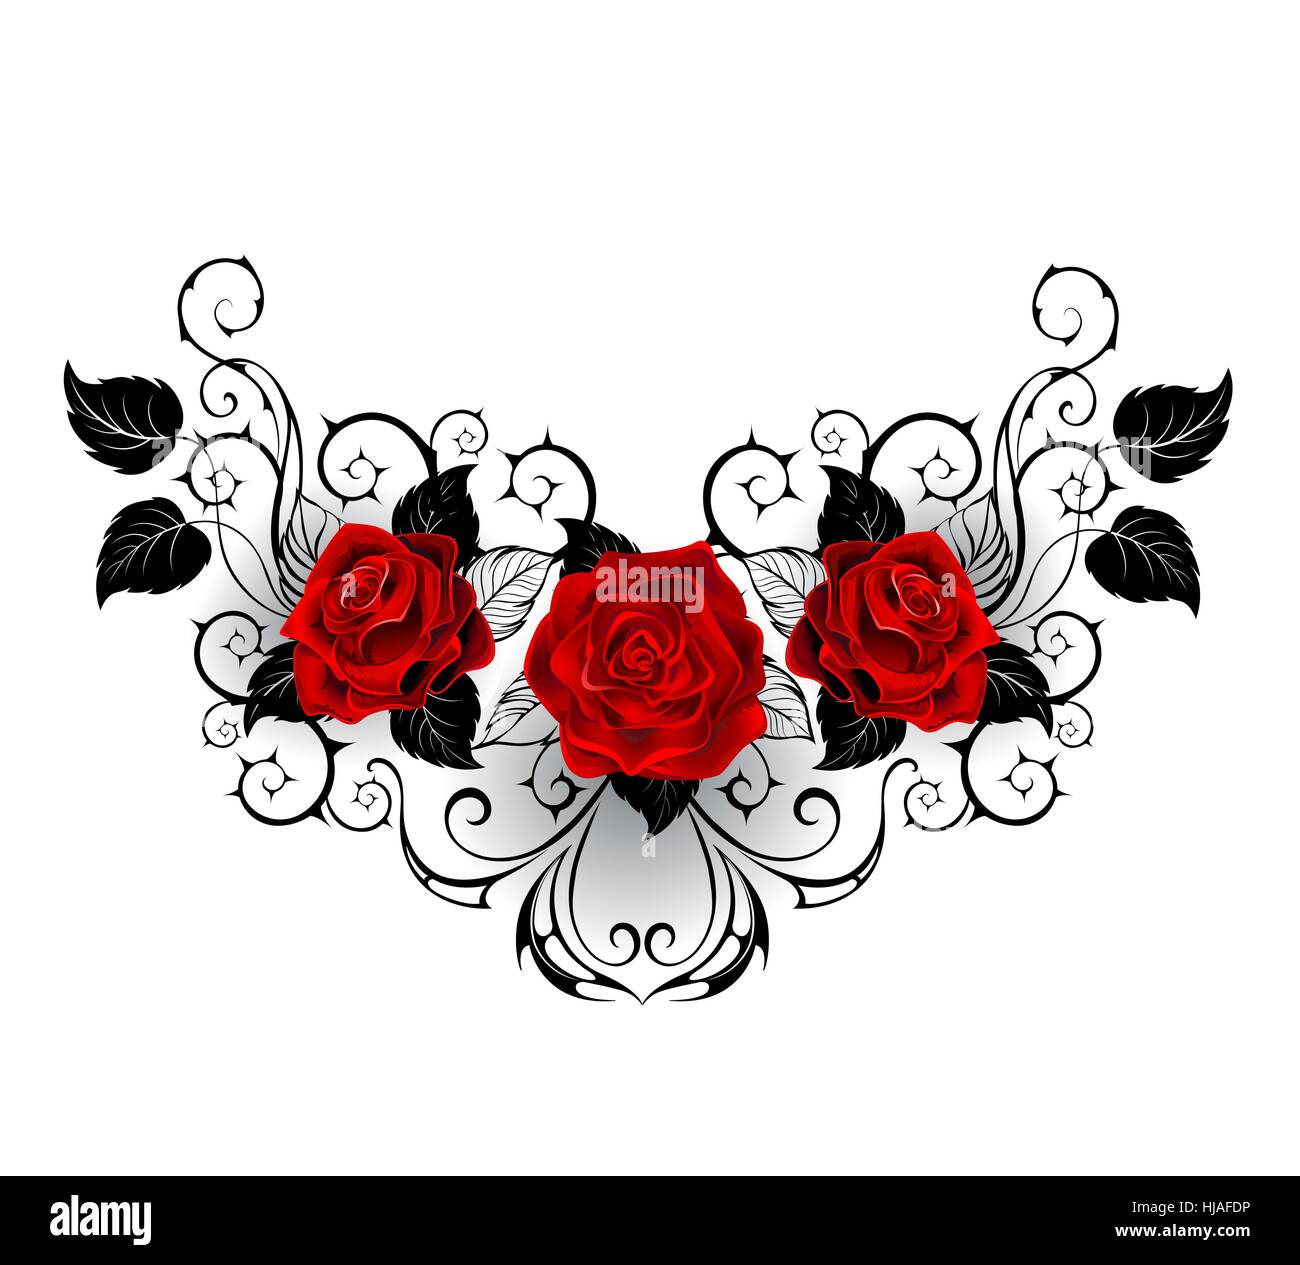 Motif symétrique avec des roses rouges et noires et les tiges épineuses feuilles noires sur fond blanc. Illustration de Vecteur